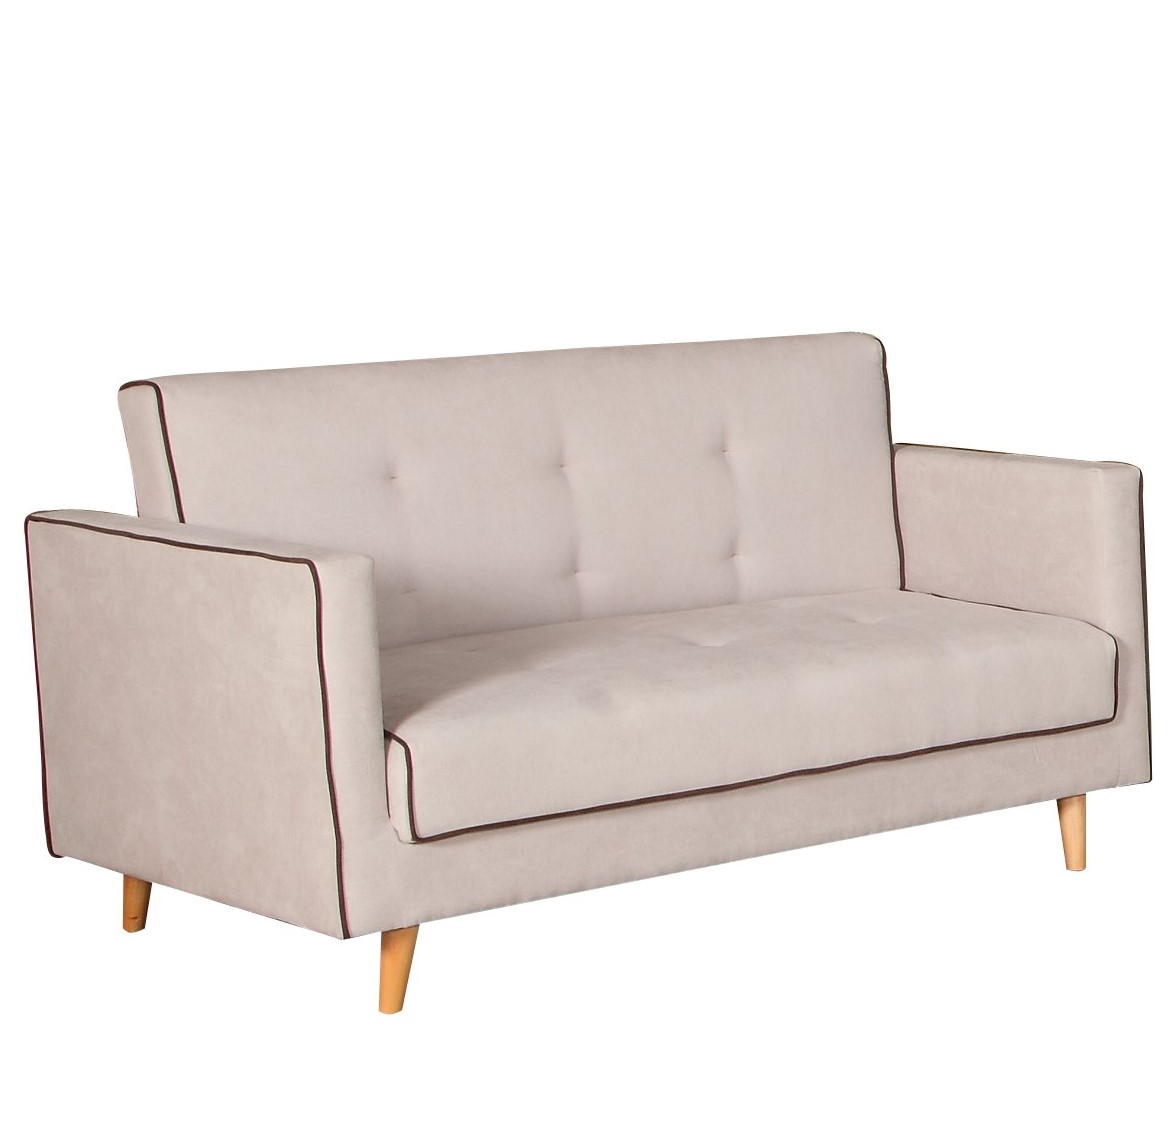 2-sitzer couch ursula mit schlaffunktion günstig kaufen | pemora